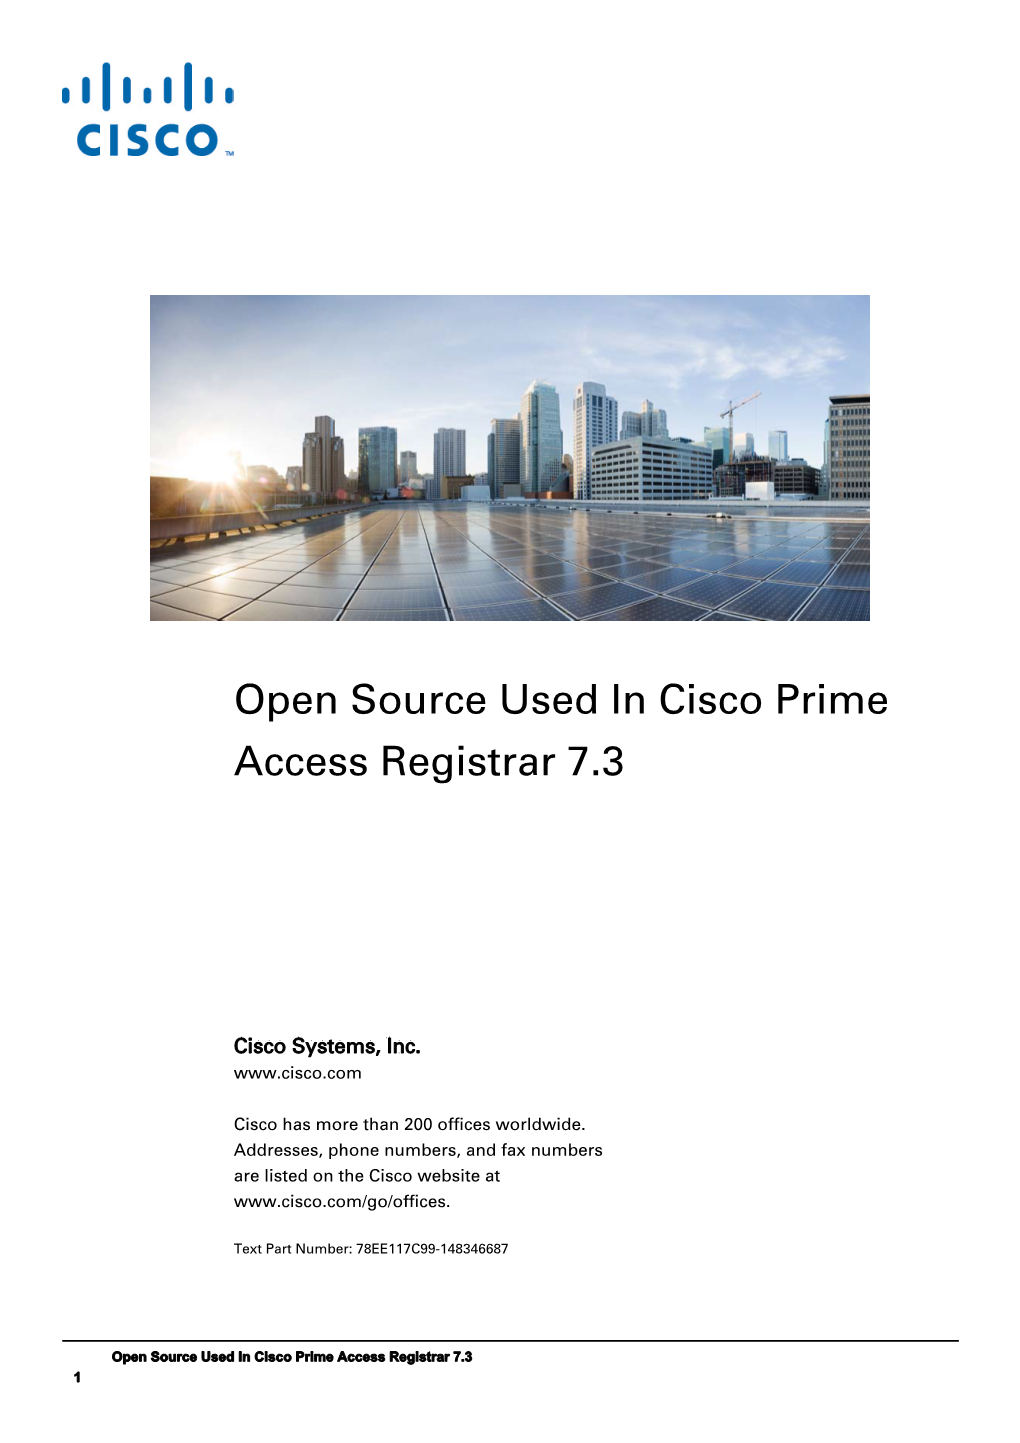 Open Source Used in Cisco Prime Access Registrar 7.3